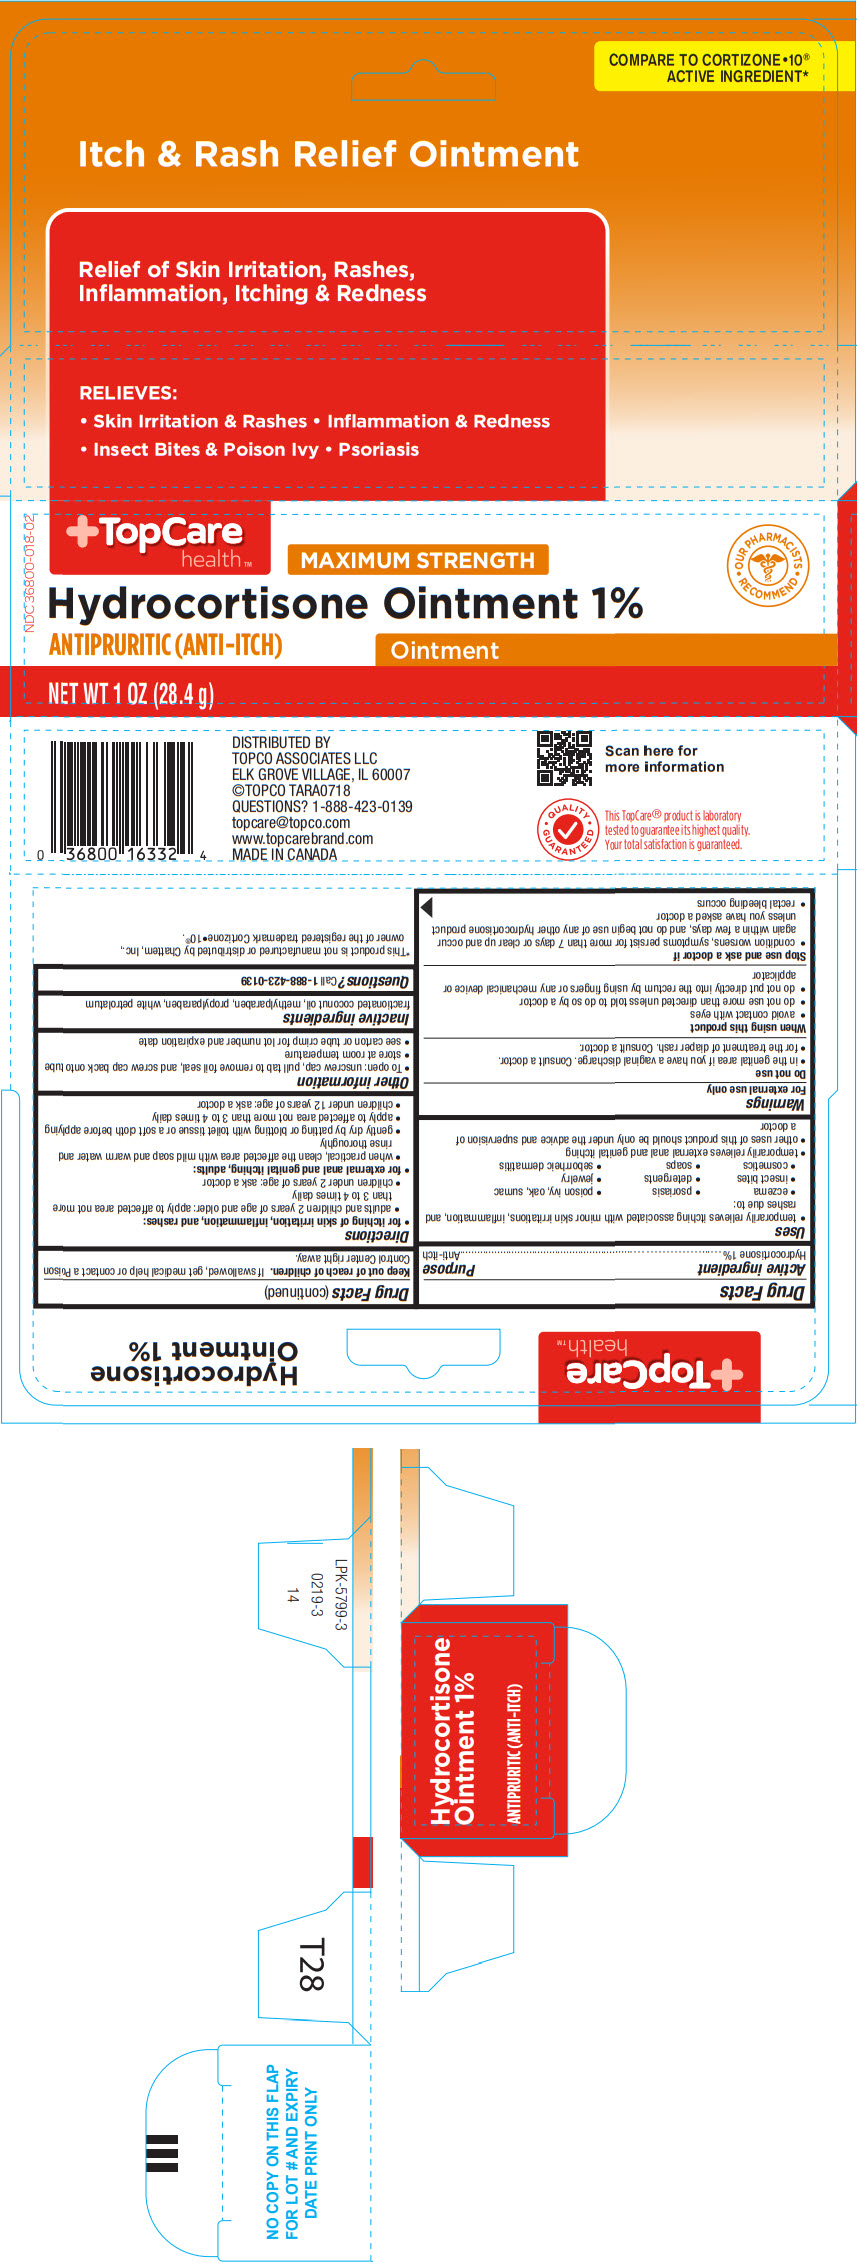 PRINCIPAL DISPLAY PANEL - 28.4 g Tube Carton